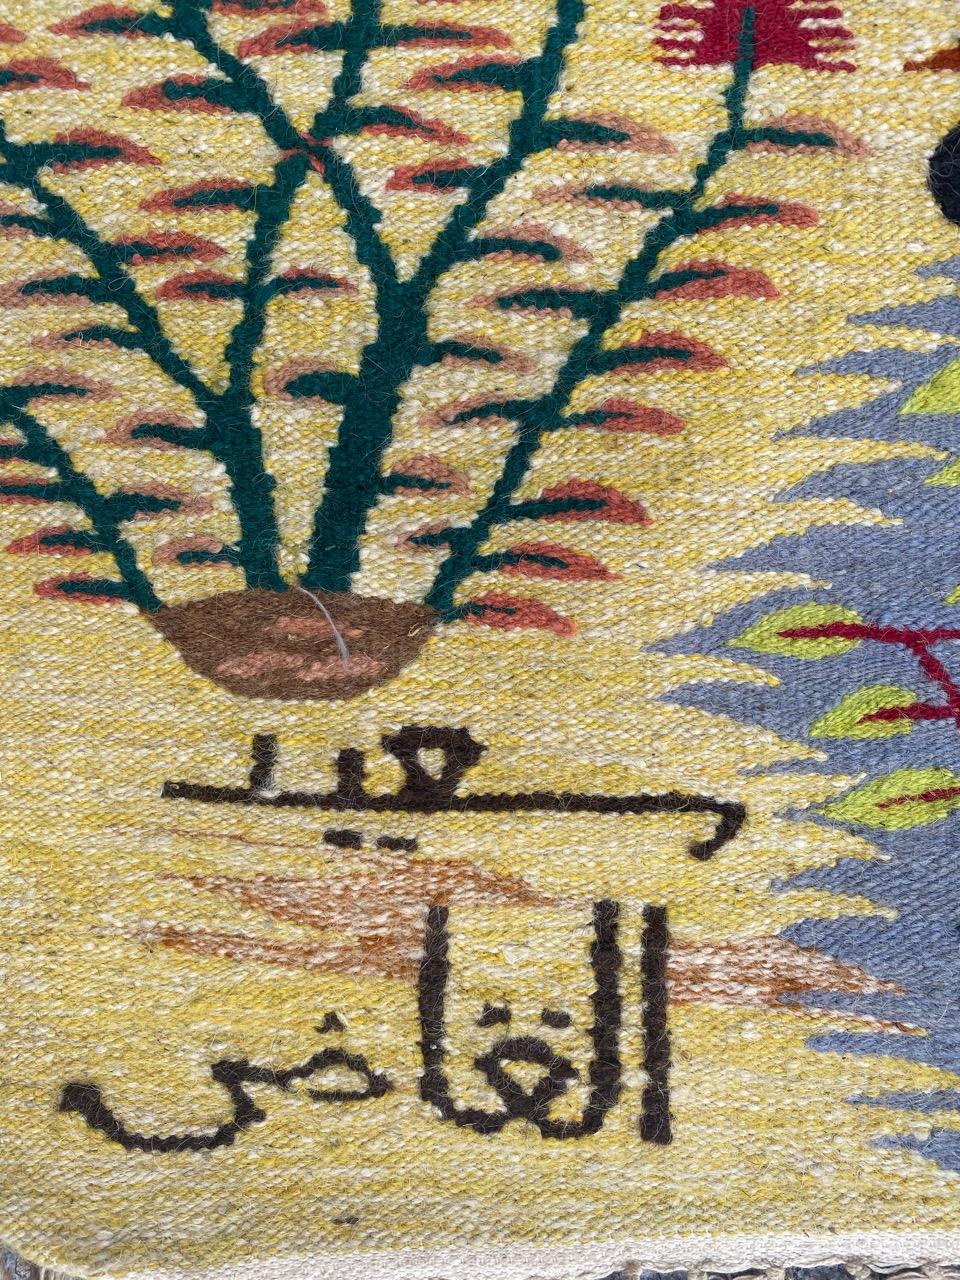 Merveilleuse tapisserie égyptienne extra large de l'école Design/One avec la signature du créateur (Saiid Ghadi) avec un magnifique dessin du jardin de la vie, avec de beaux trois et oiseaux et de très jolies couleurs, entièrement tissée à la main